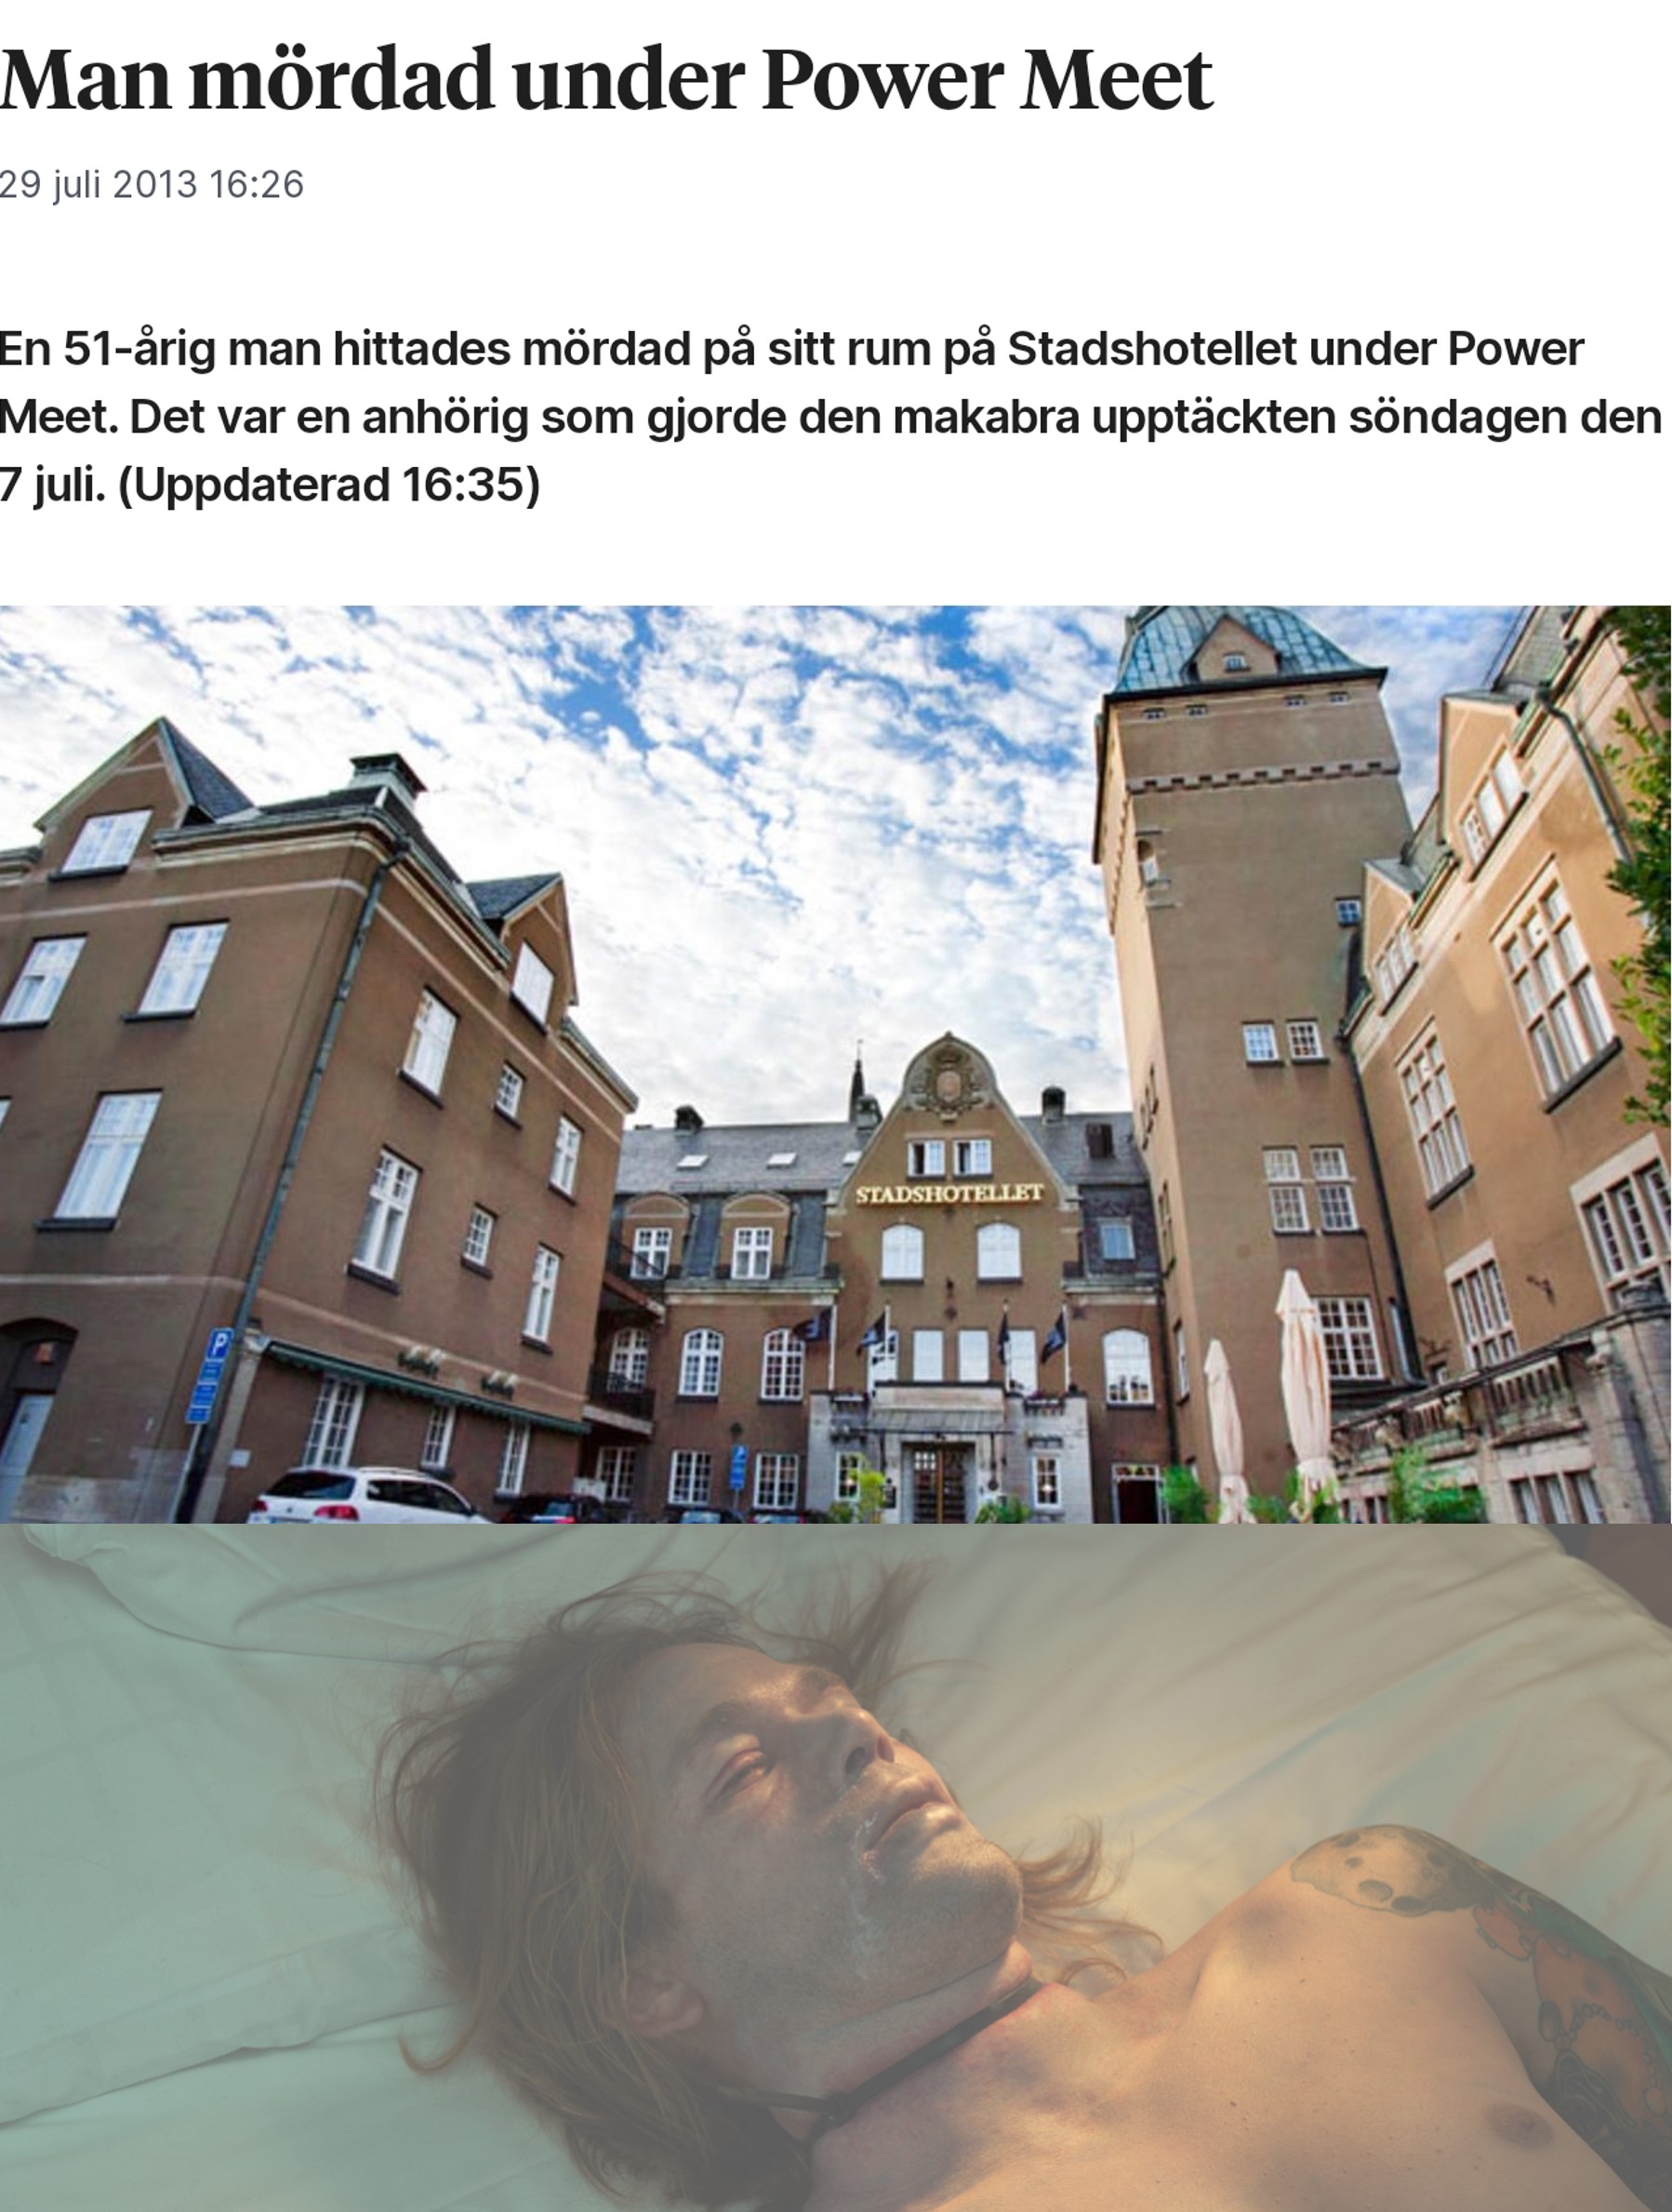 Tio år har  inom kort passerats från den dagen då en 51-årig man hittades död på rum 419 på stadshotellet i Västerås.